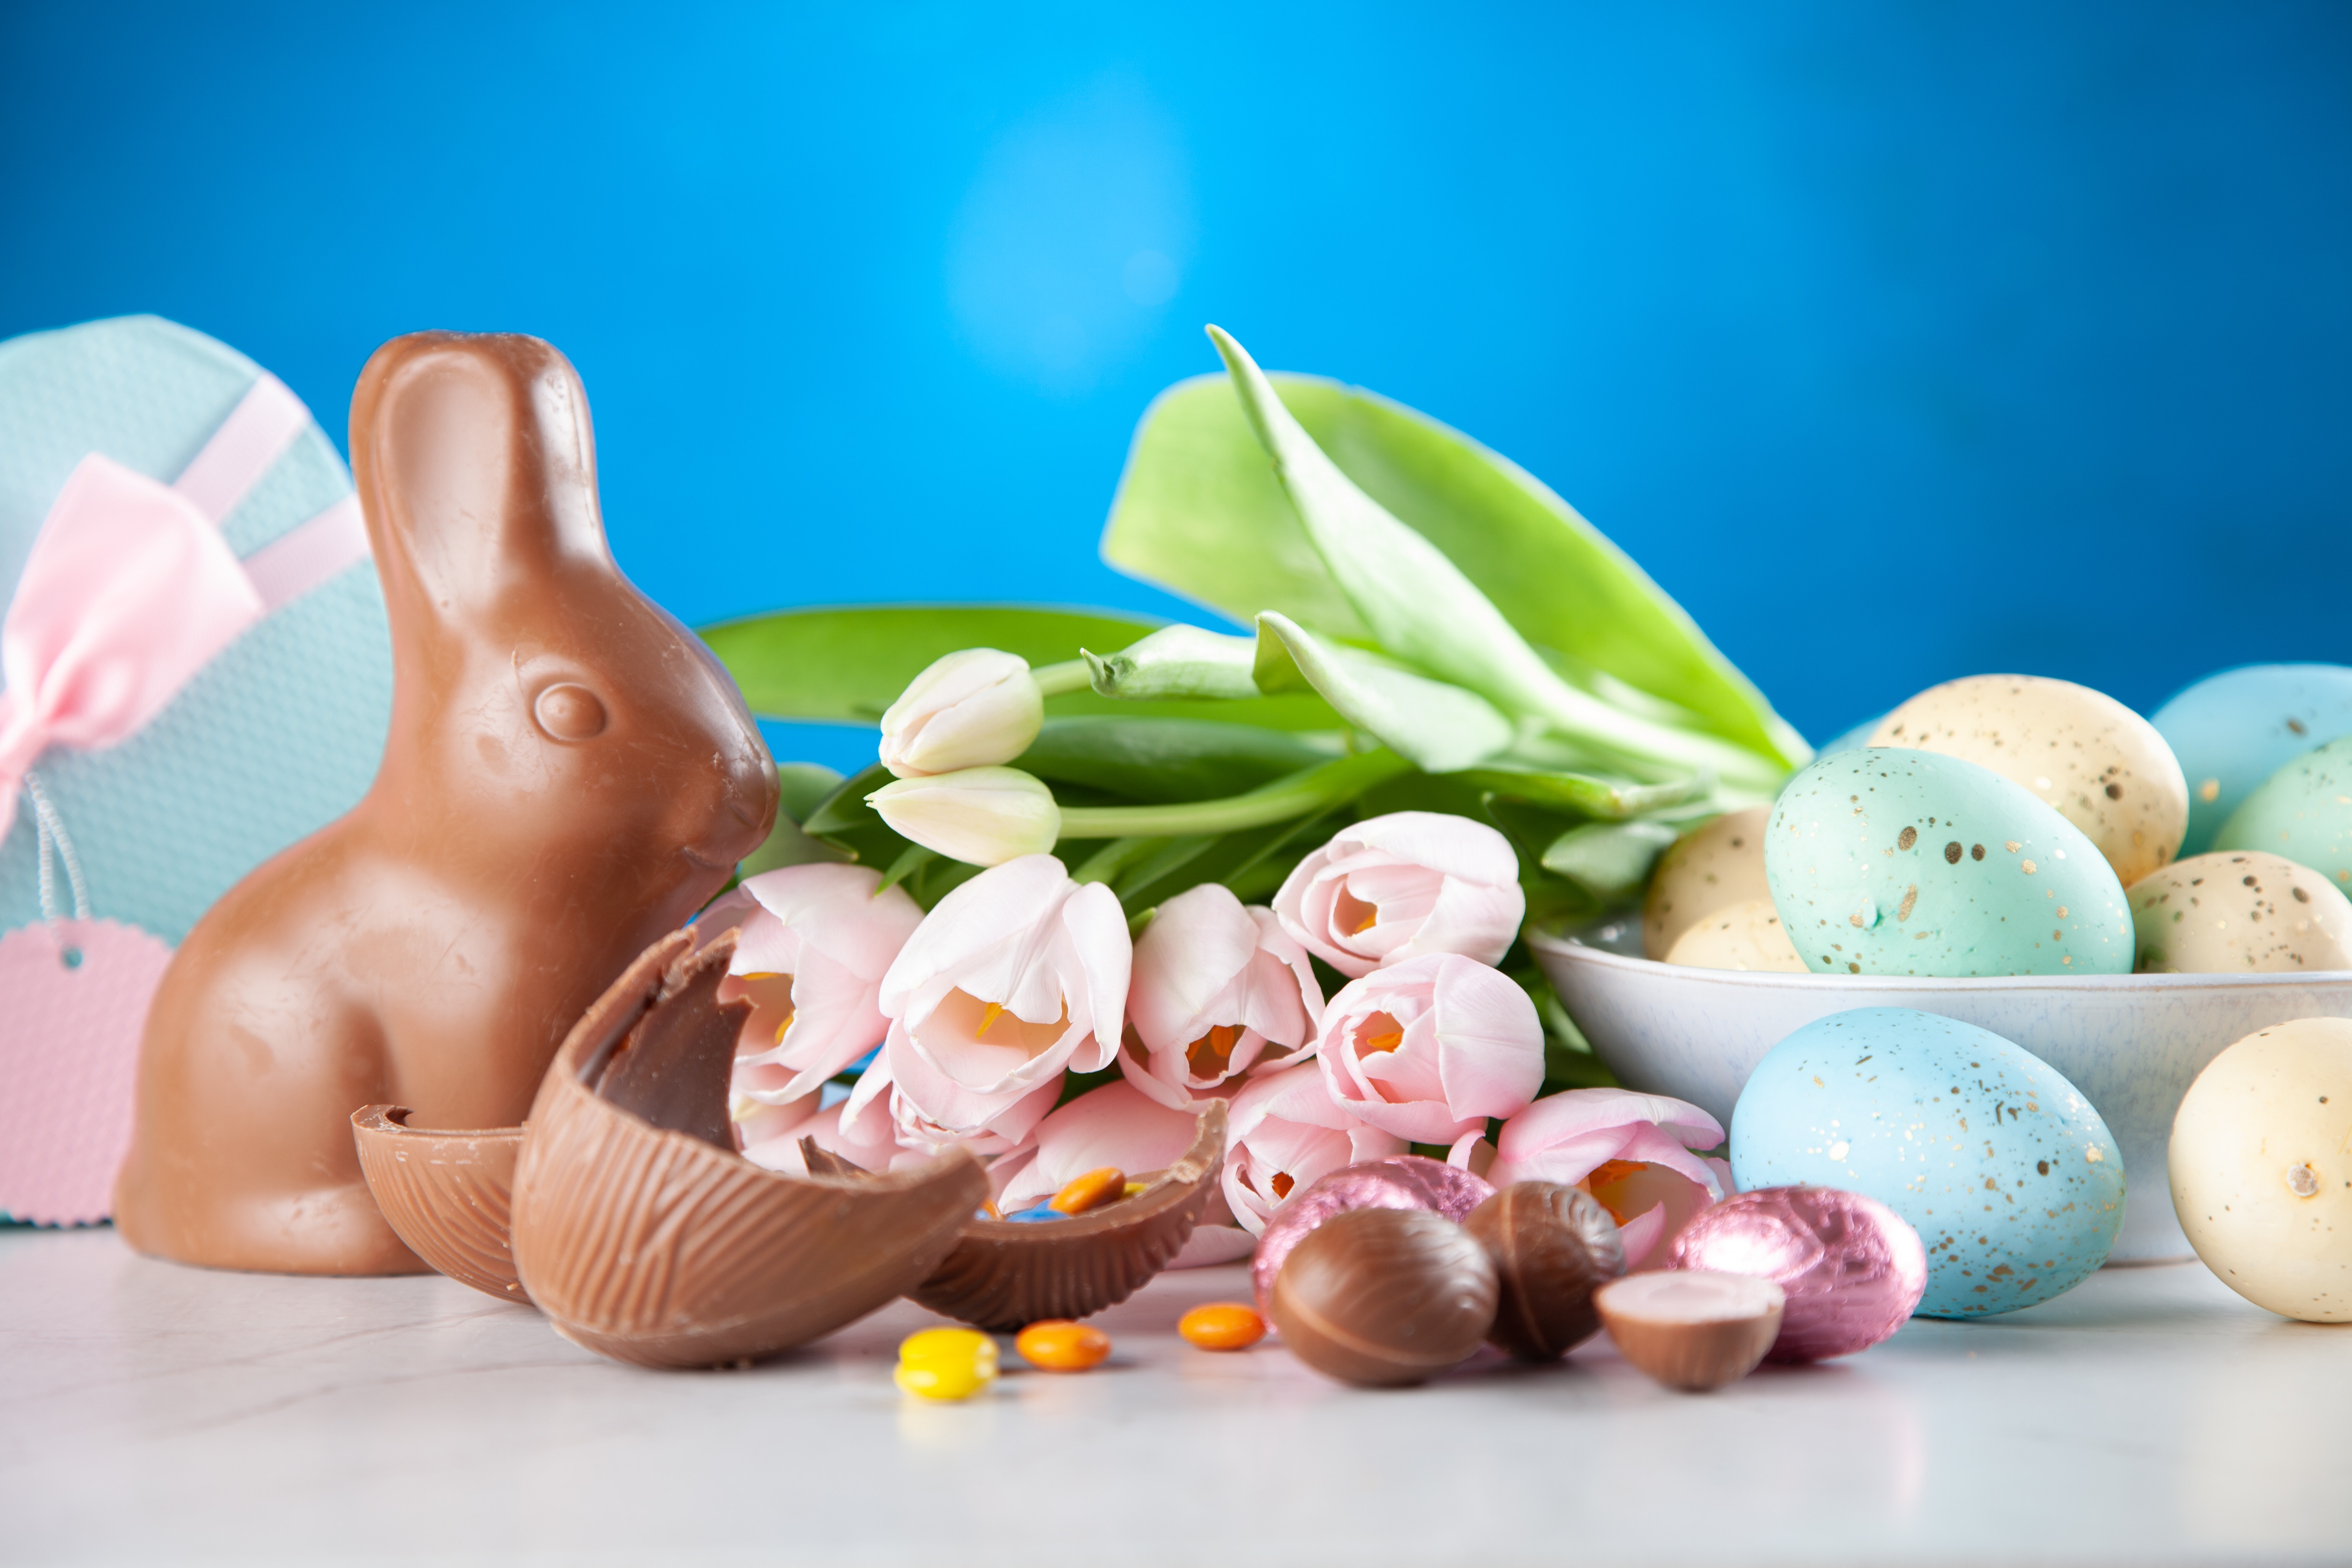 Easter（イースター）は何も知らずにみるととても不思議！色卵？うさぎ？よりよく知るためにイースターがどのようなものなのか紹介します！